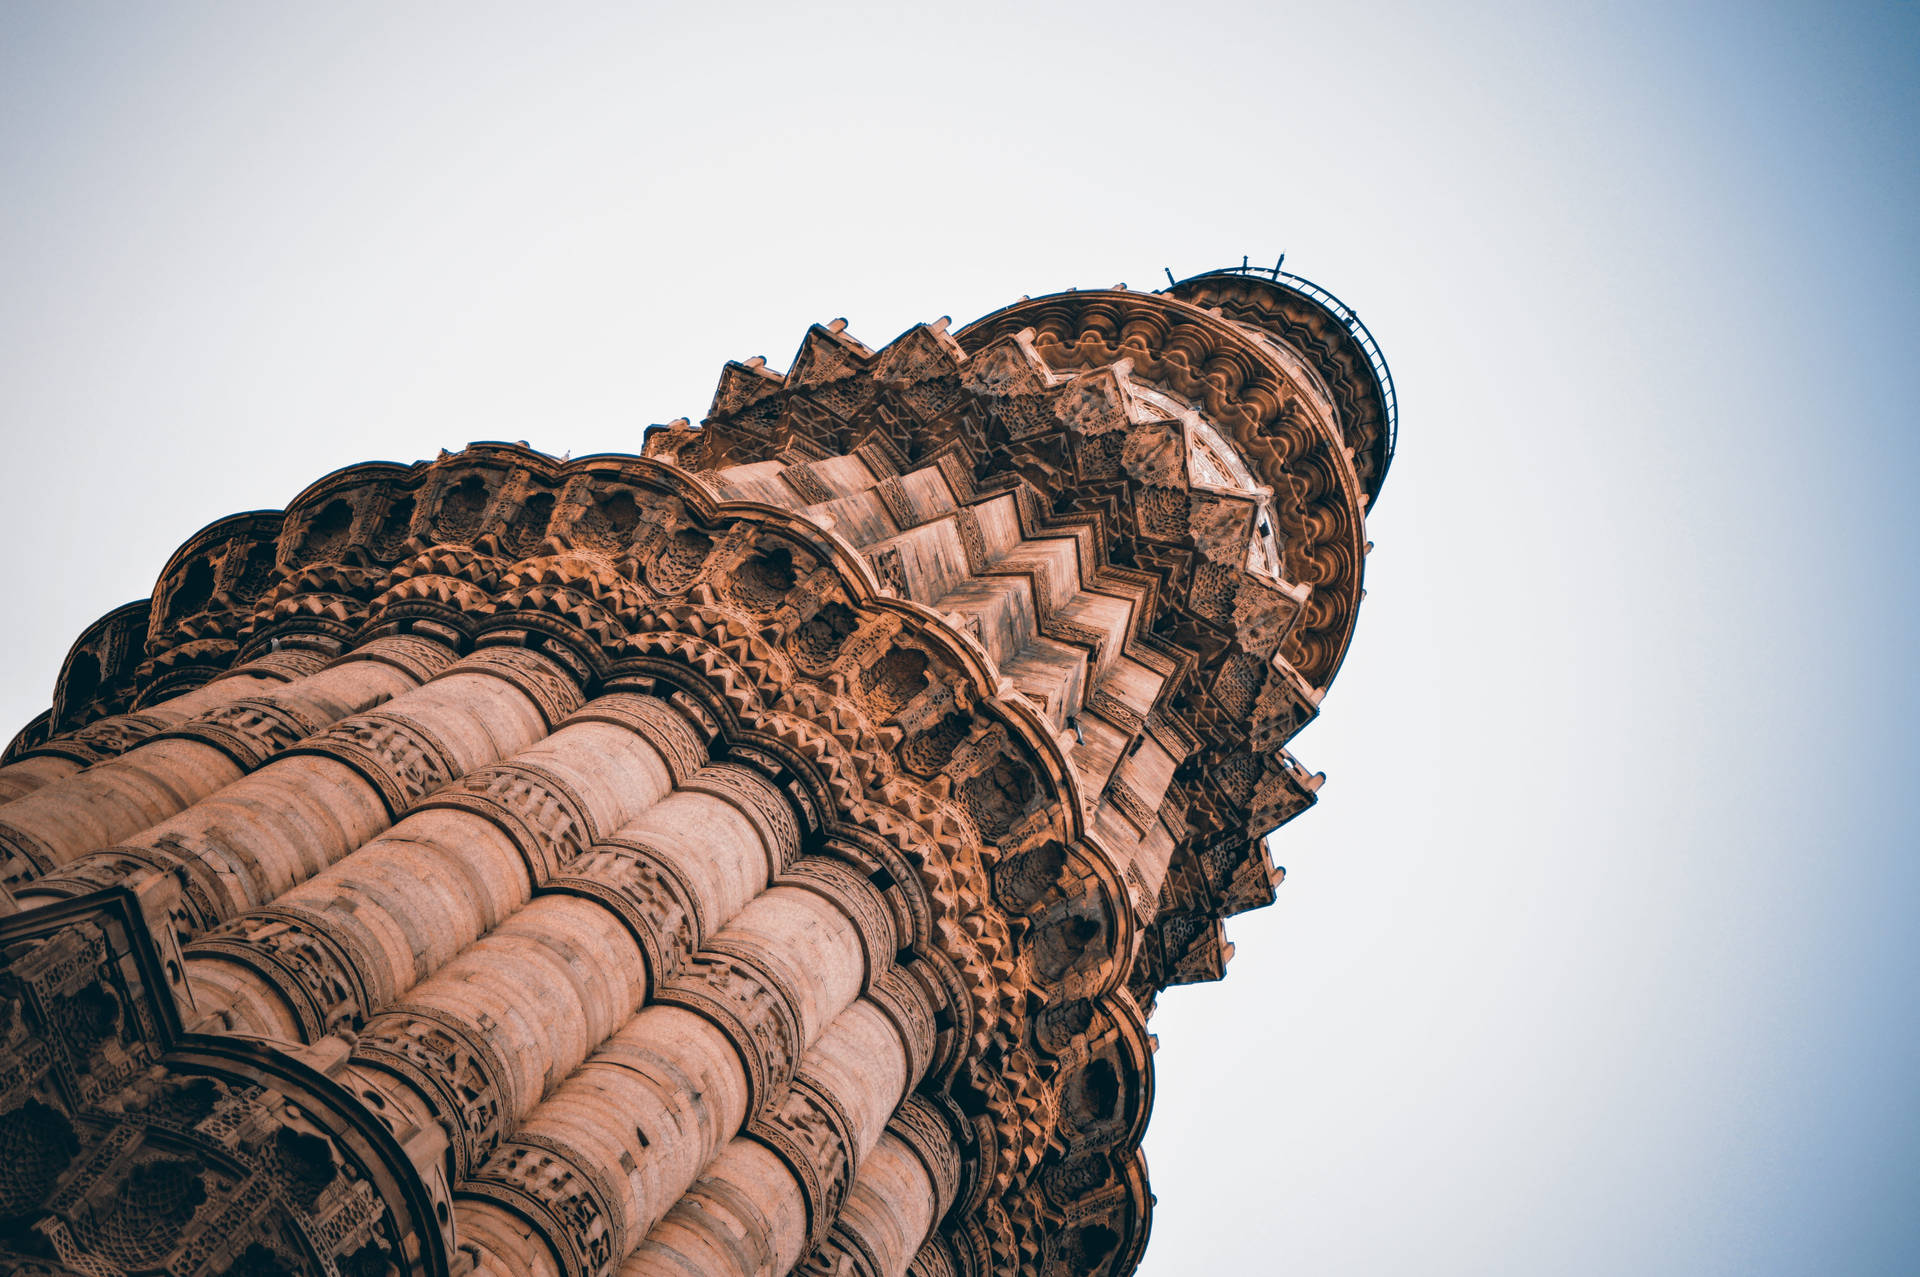 Delhi Qutub Minar Close-up